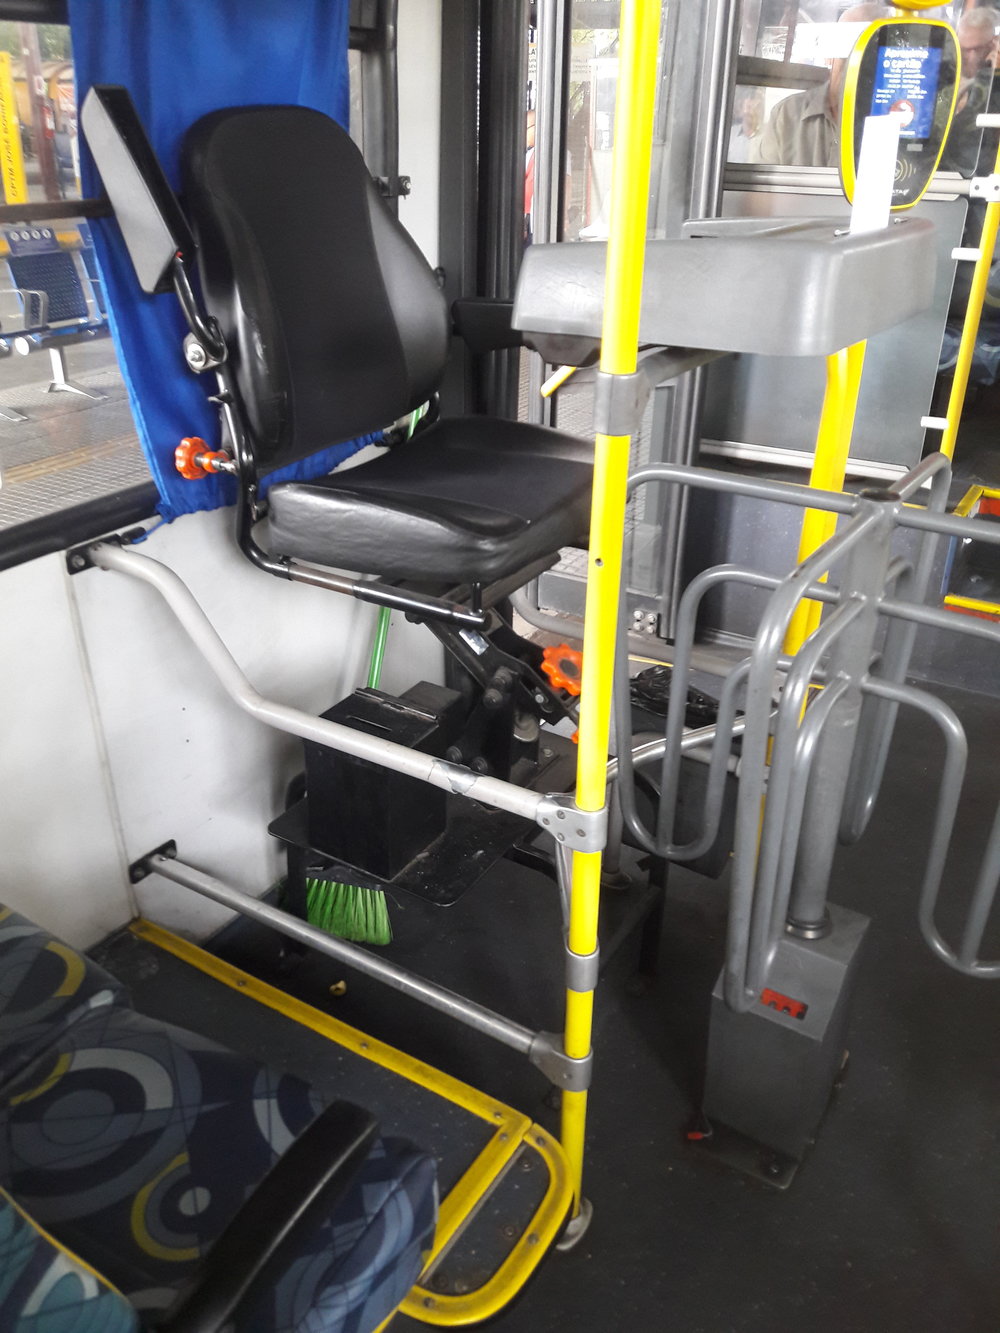  Stanoviště pro průvodčí v městských trolejbusech připomíná bidýlko. Není pro ně ovšem pohodlné, protože jejich nohy kolidují s otáčejícím se turniketem. 